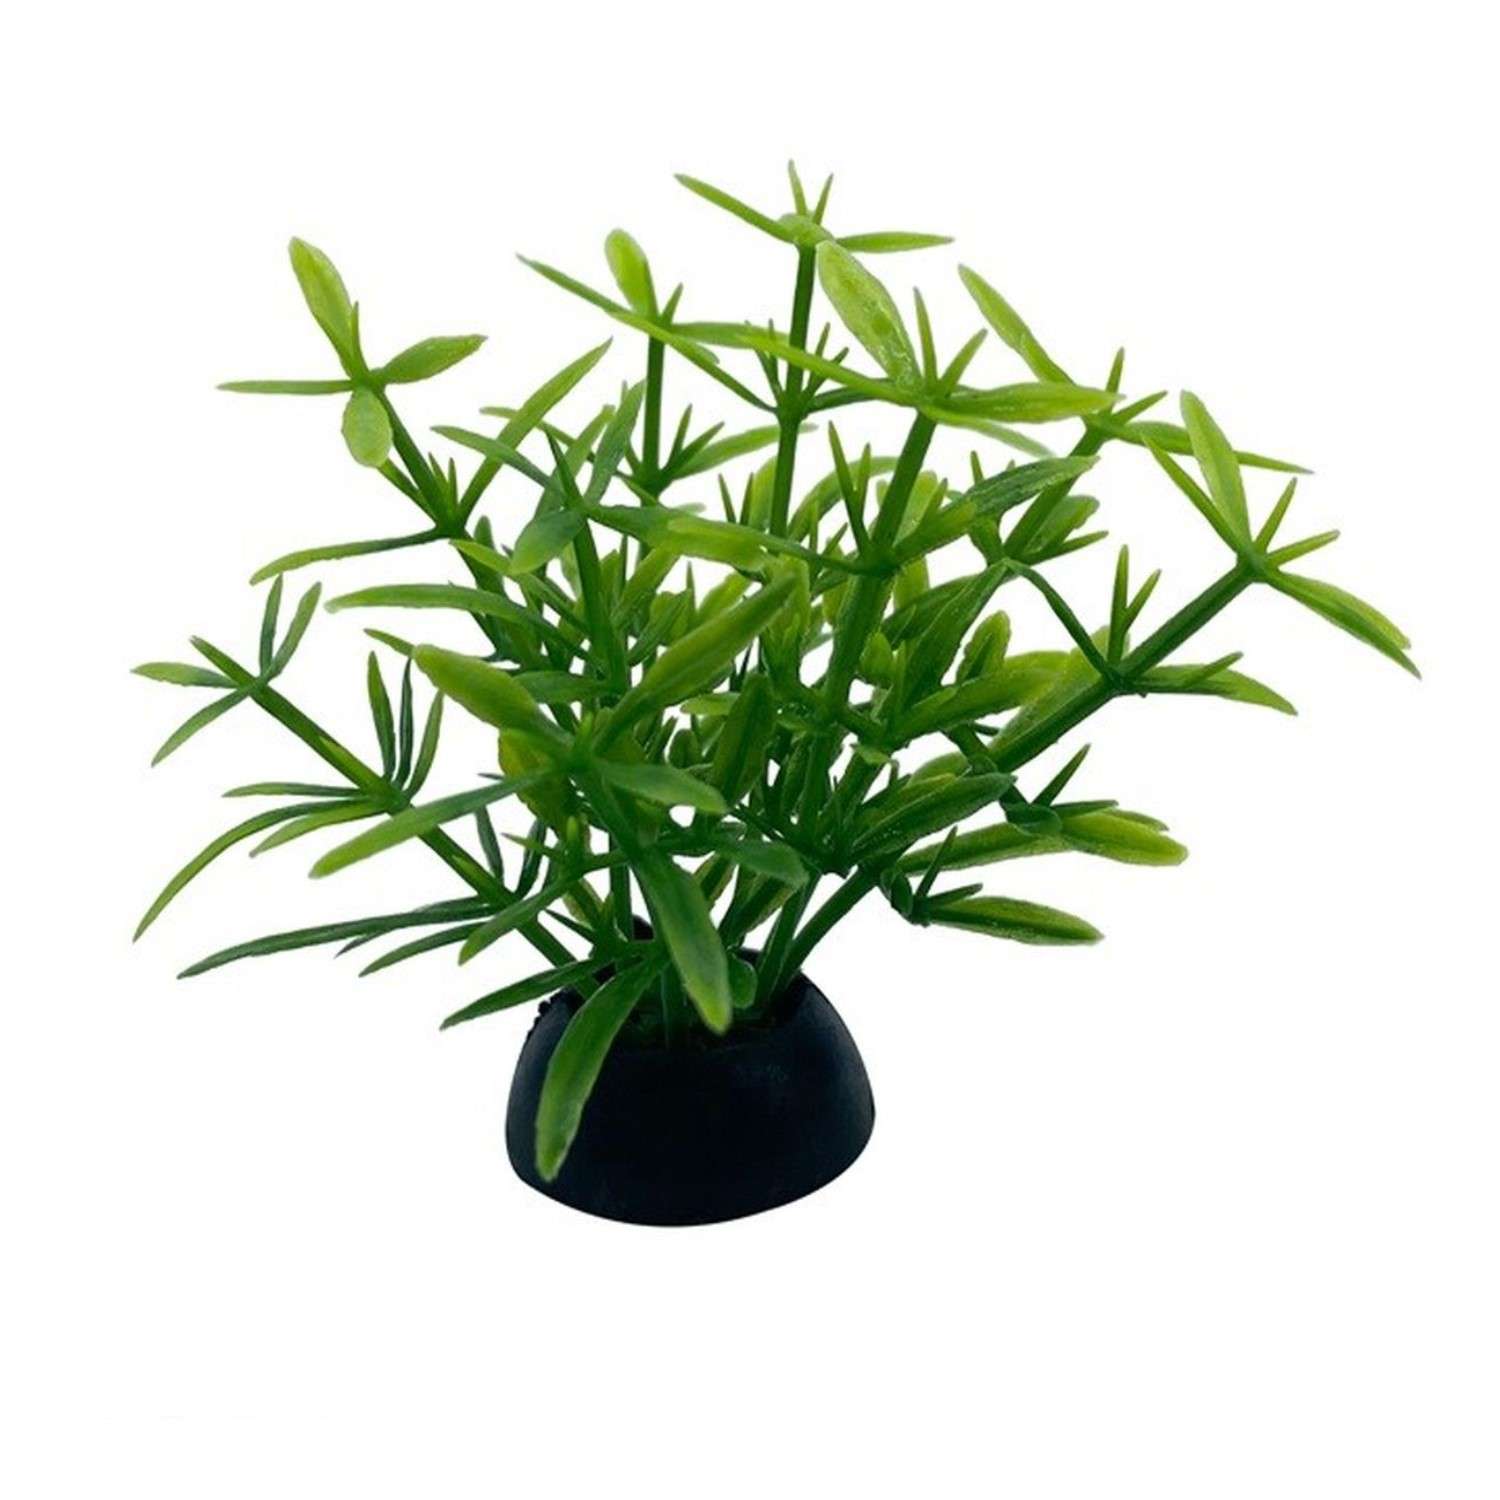 Аквариумное растение Rabizy искусственное 2.5х5 см - фото 2